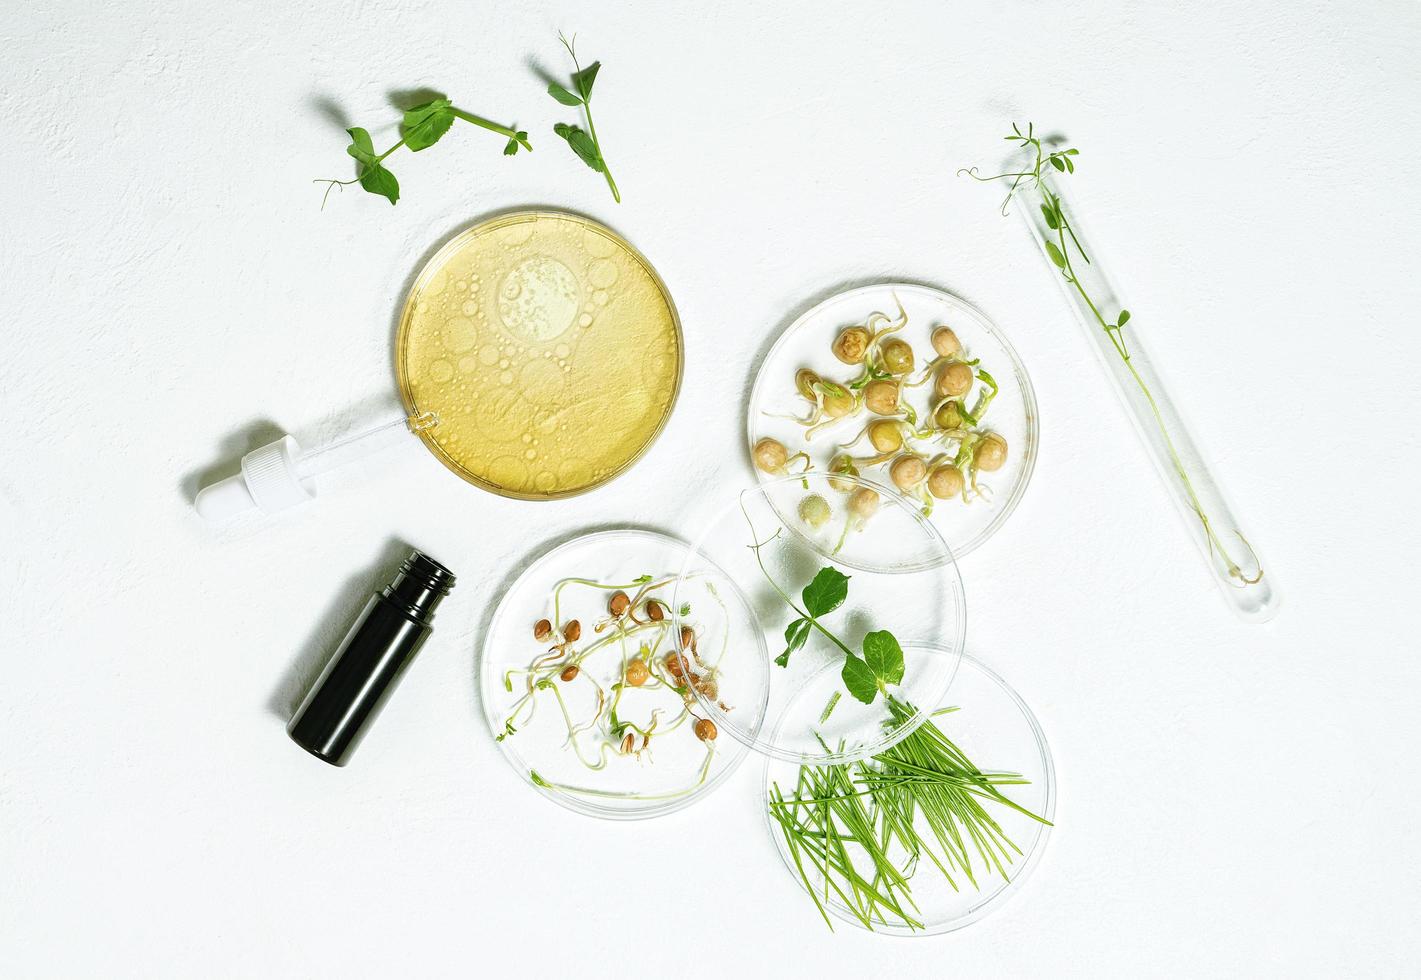 Plano de fundo de cosméticos para a pele de placas de Petri e tubos cosméticos com fitoterápicos com sementes germinadas de ervilhas, lentilhas e grãos de trigo foto